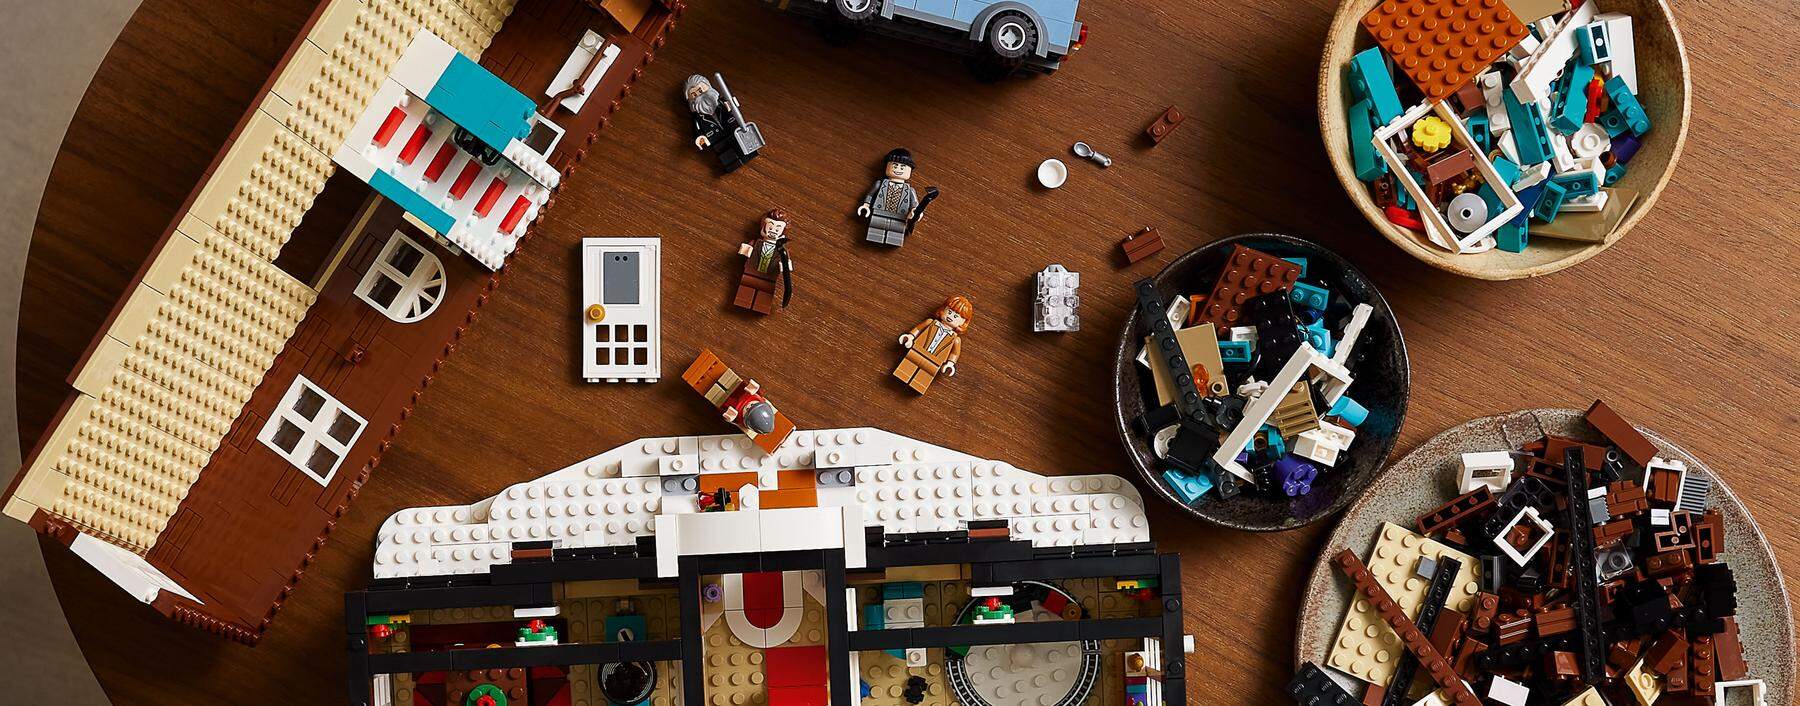 Lego-Bausatz "Kevin - Allein zu Haus"